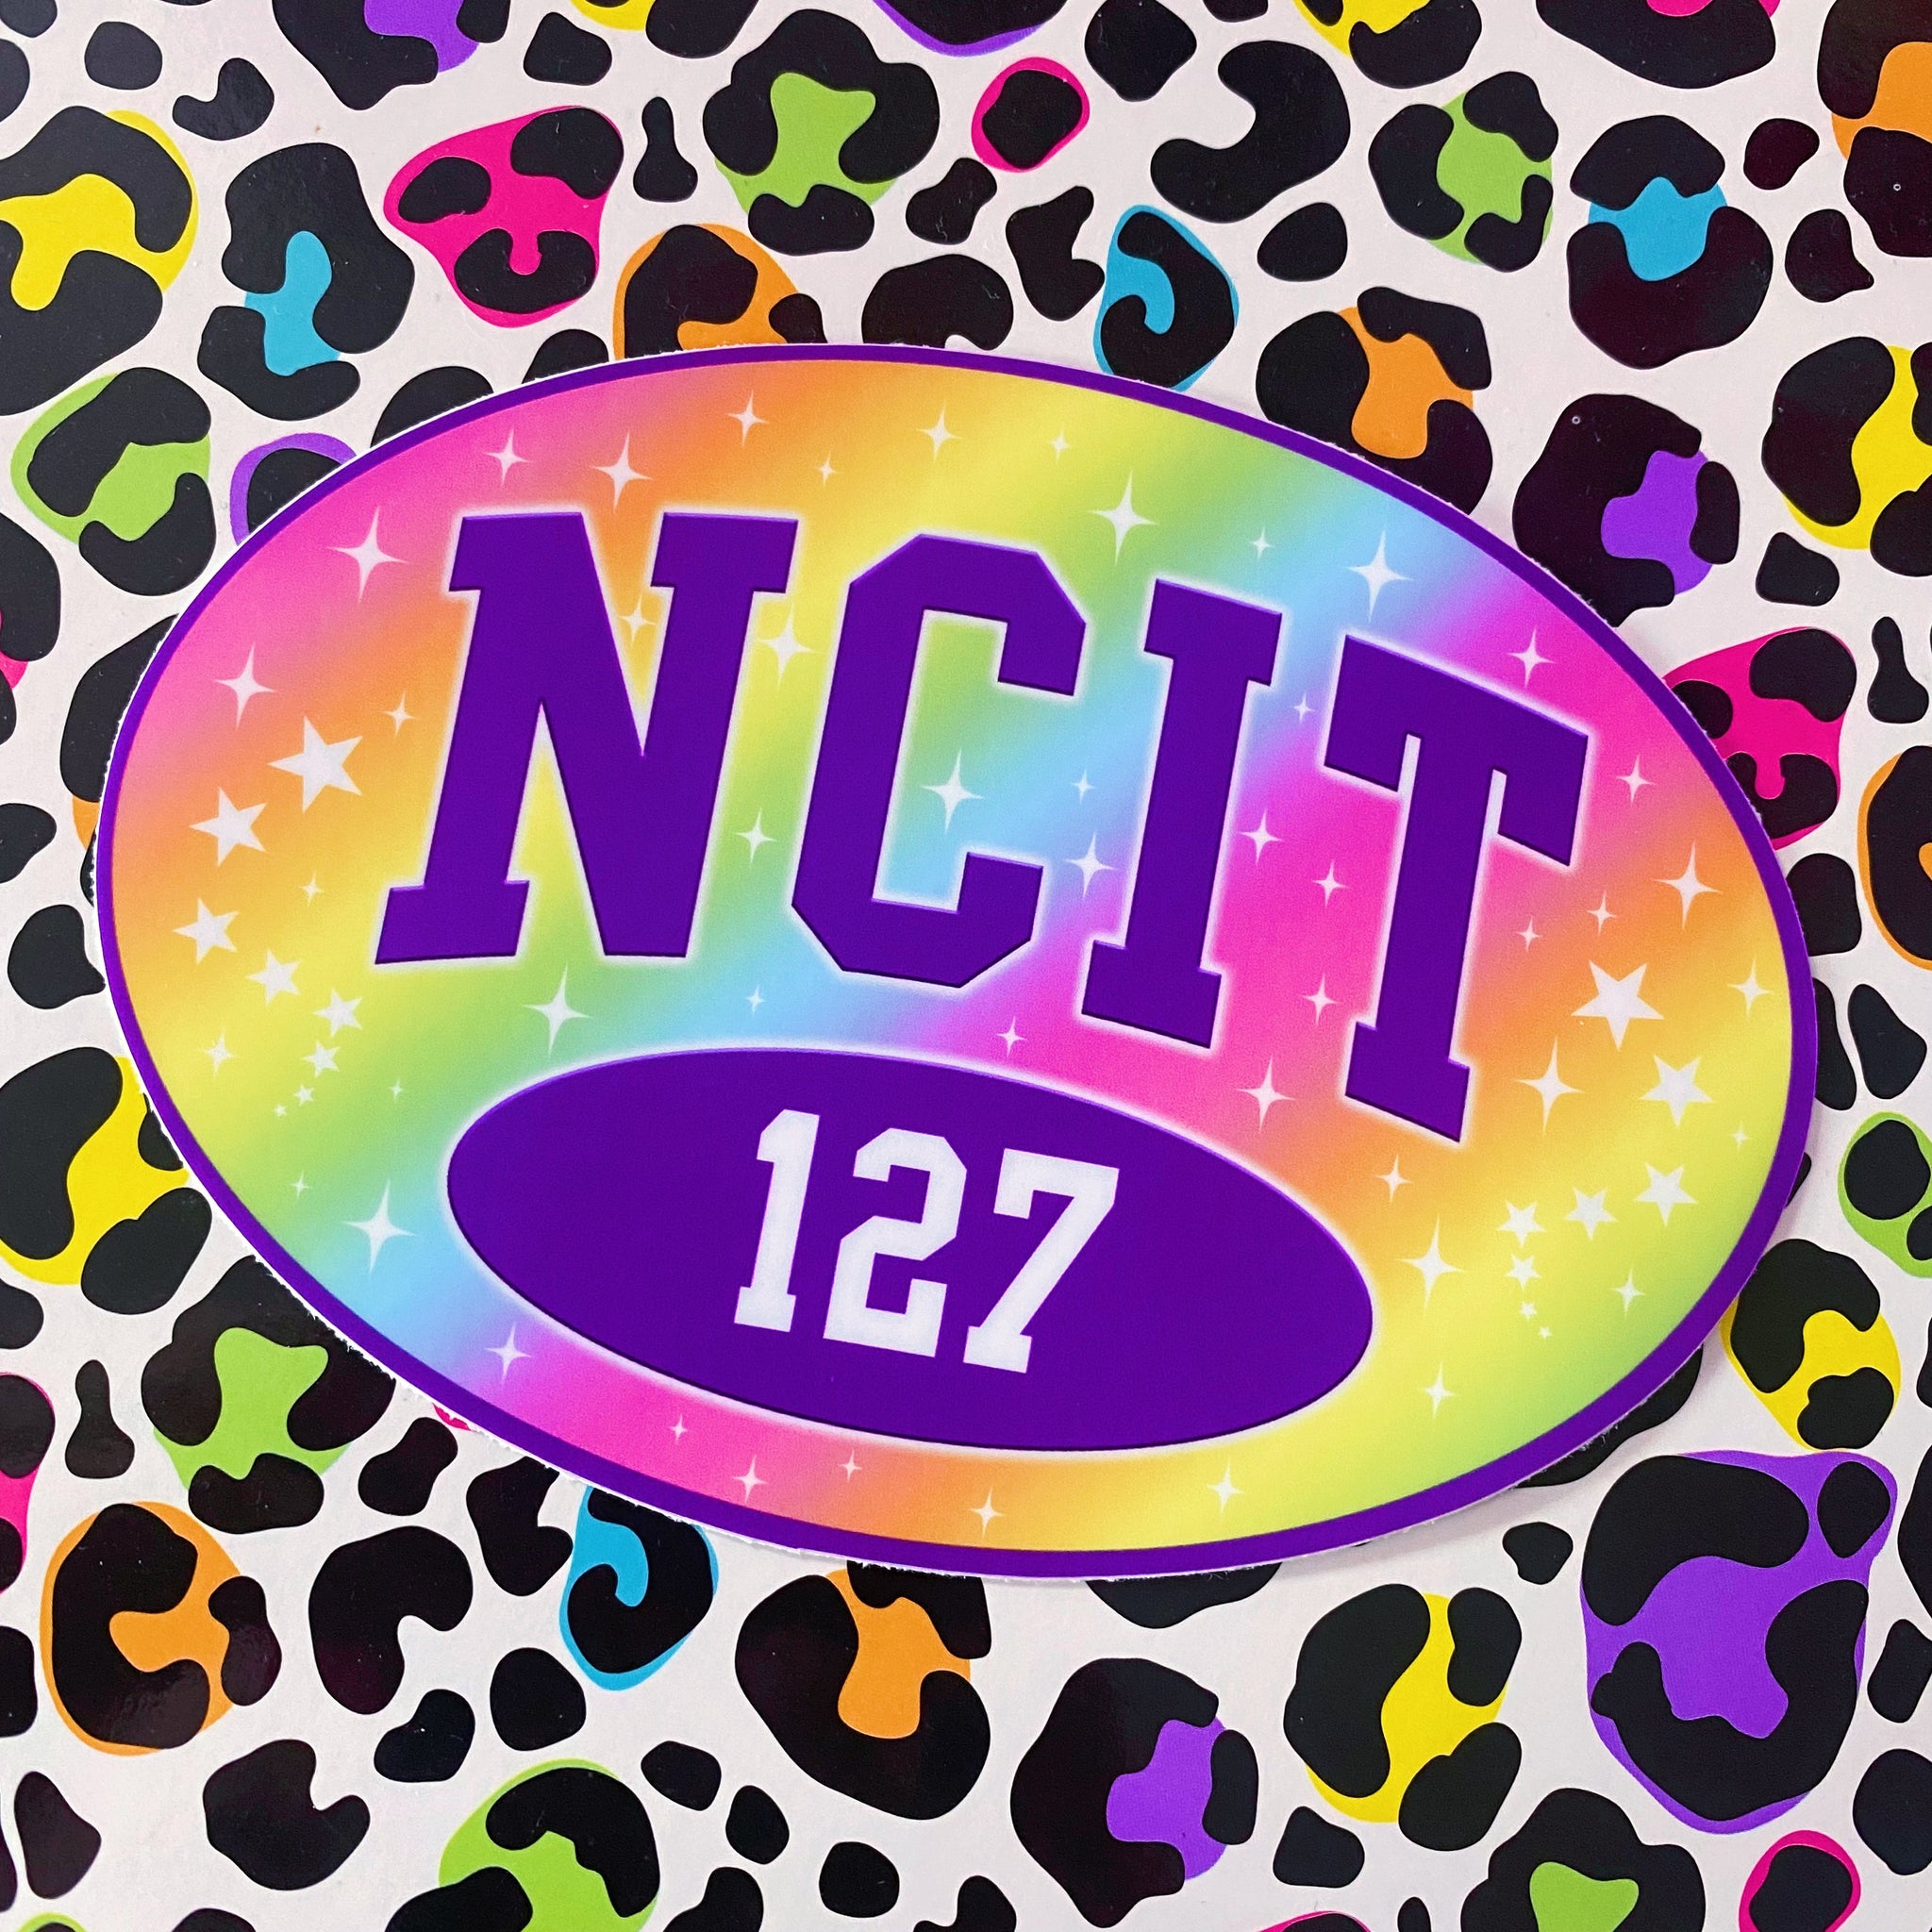 NCIT 5” sticker